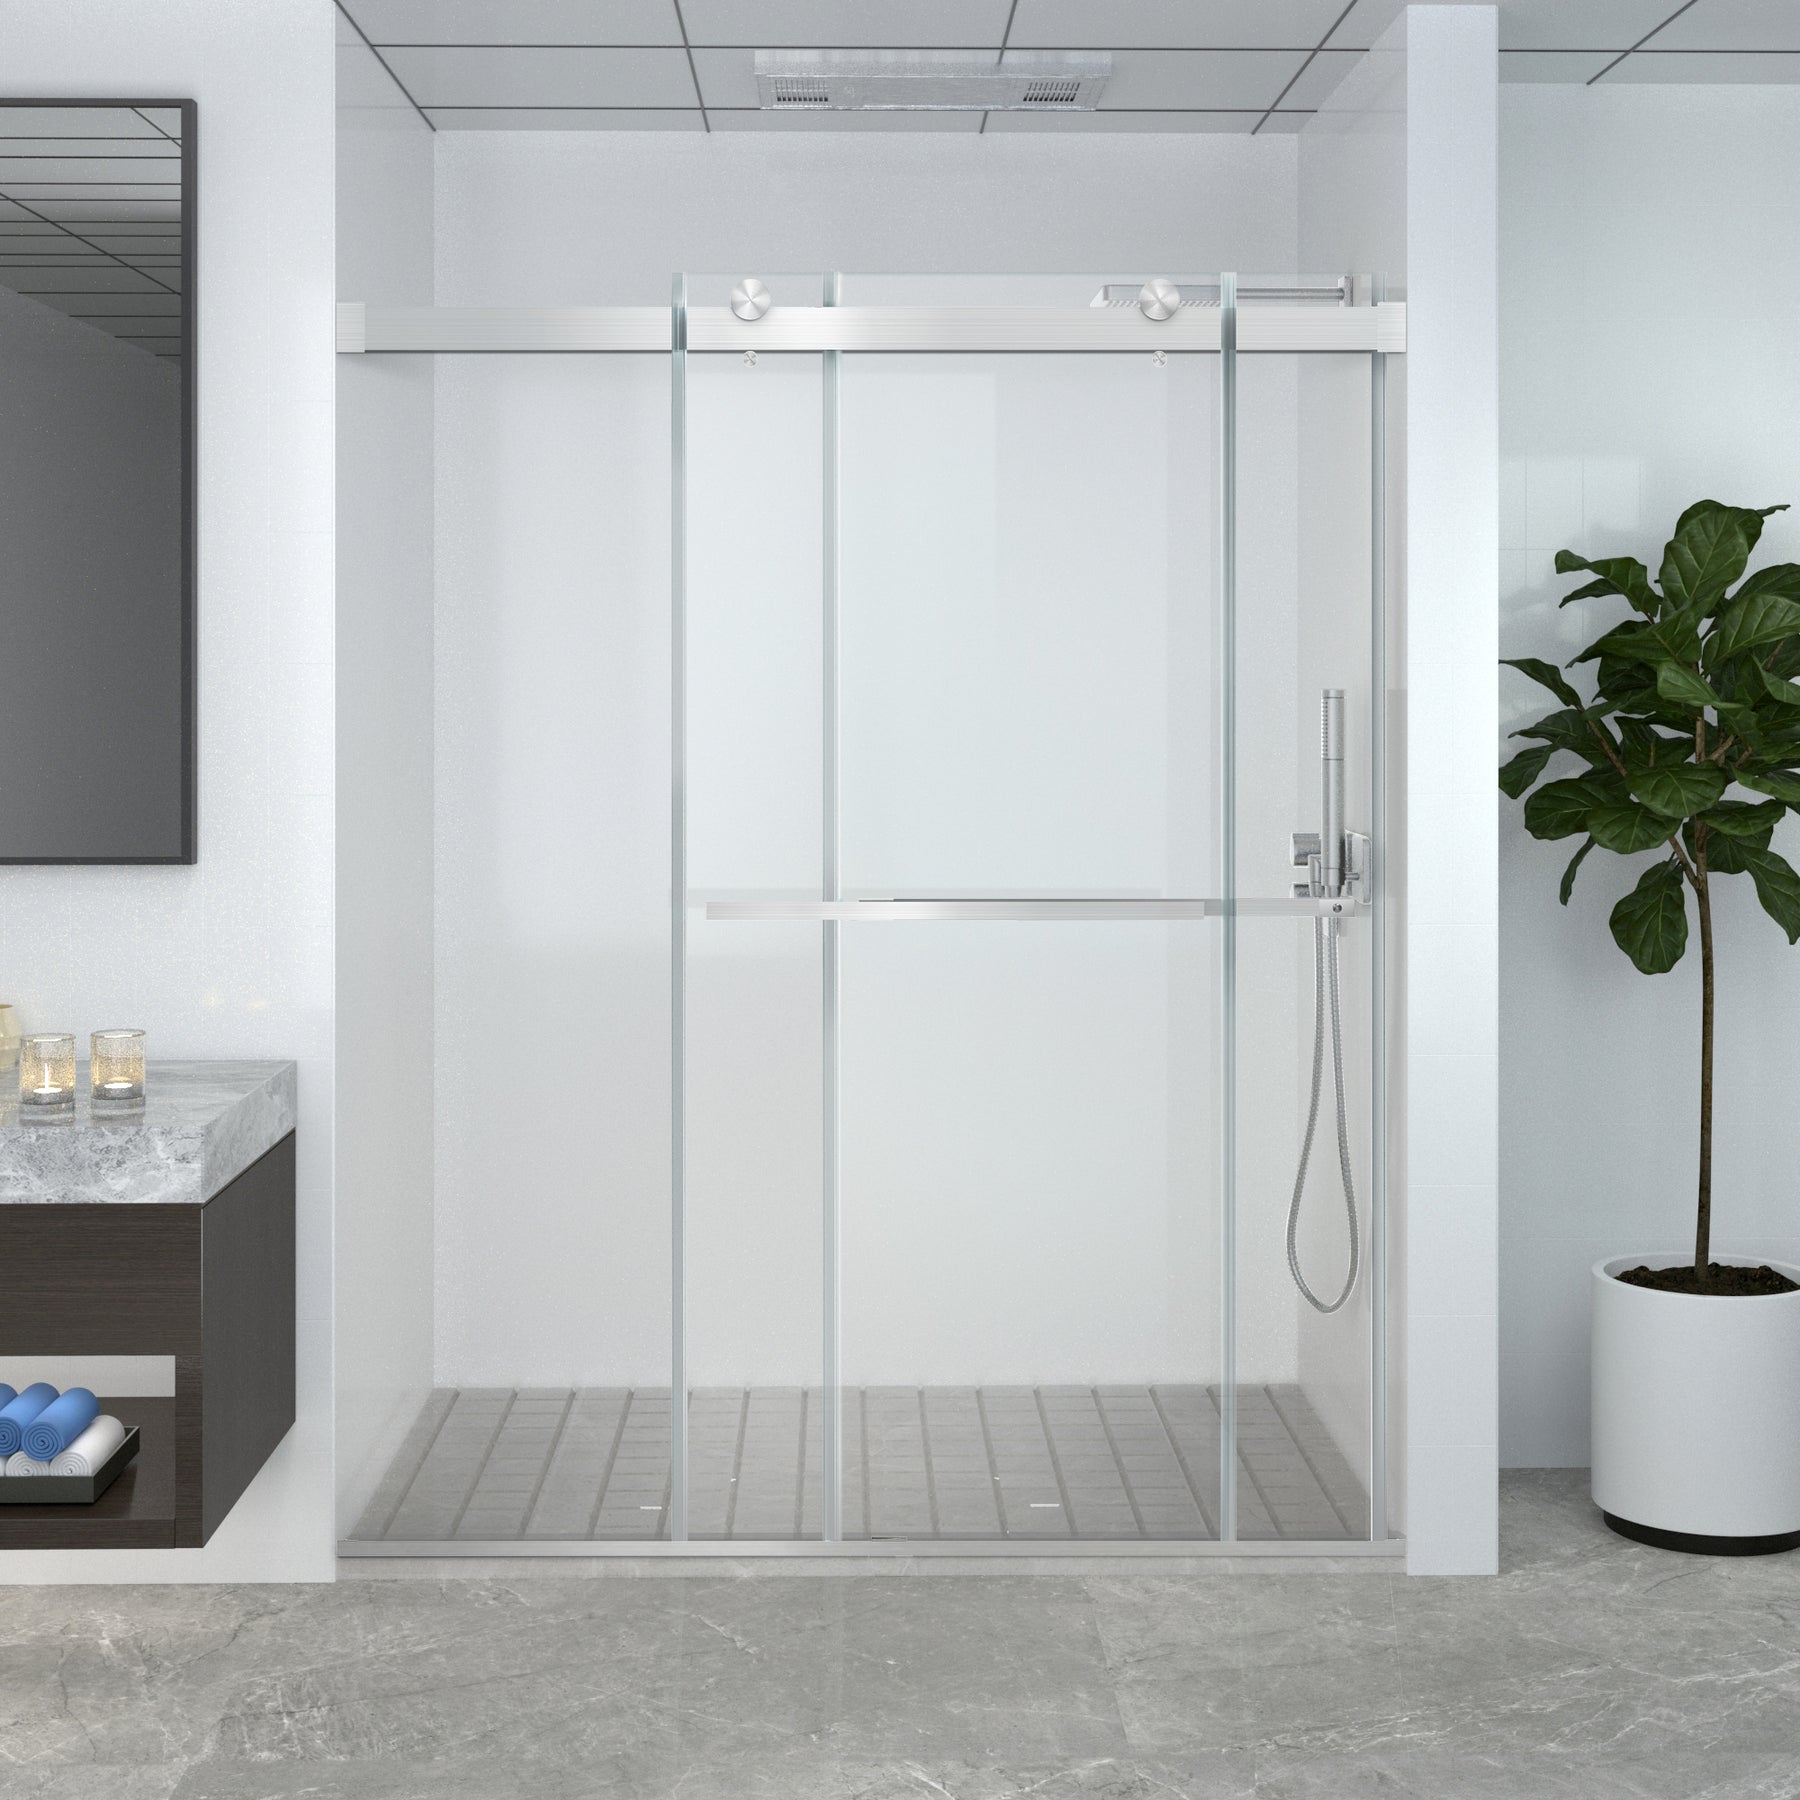 SL4U Frameless Sliding Shower Doors, Brushed Nickel Shower Enclosure